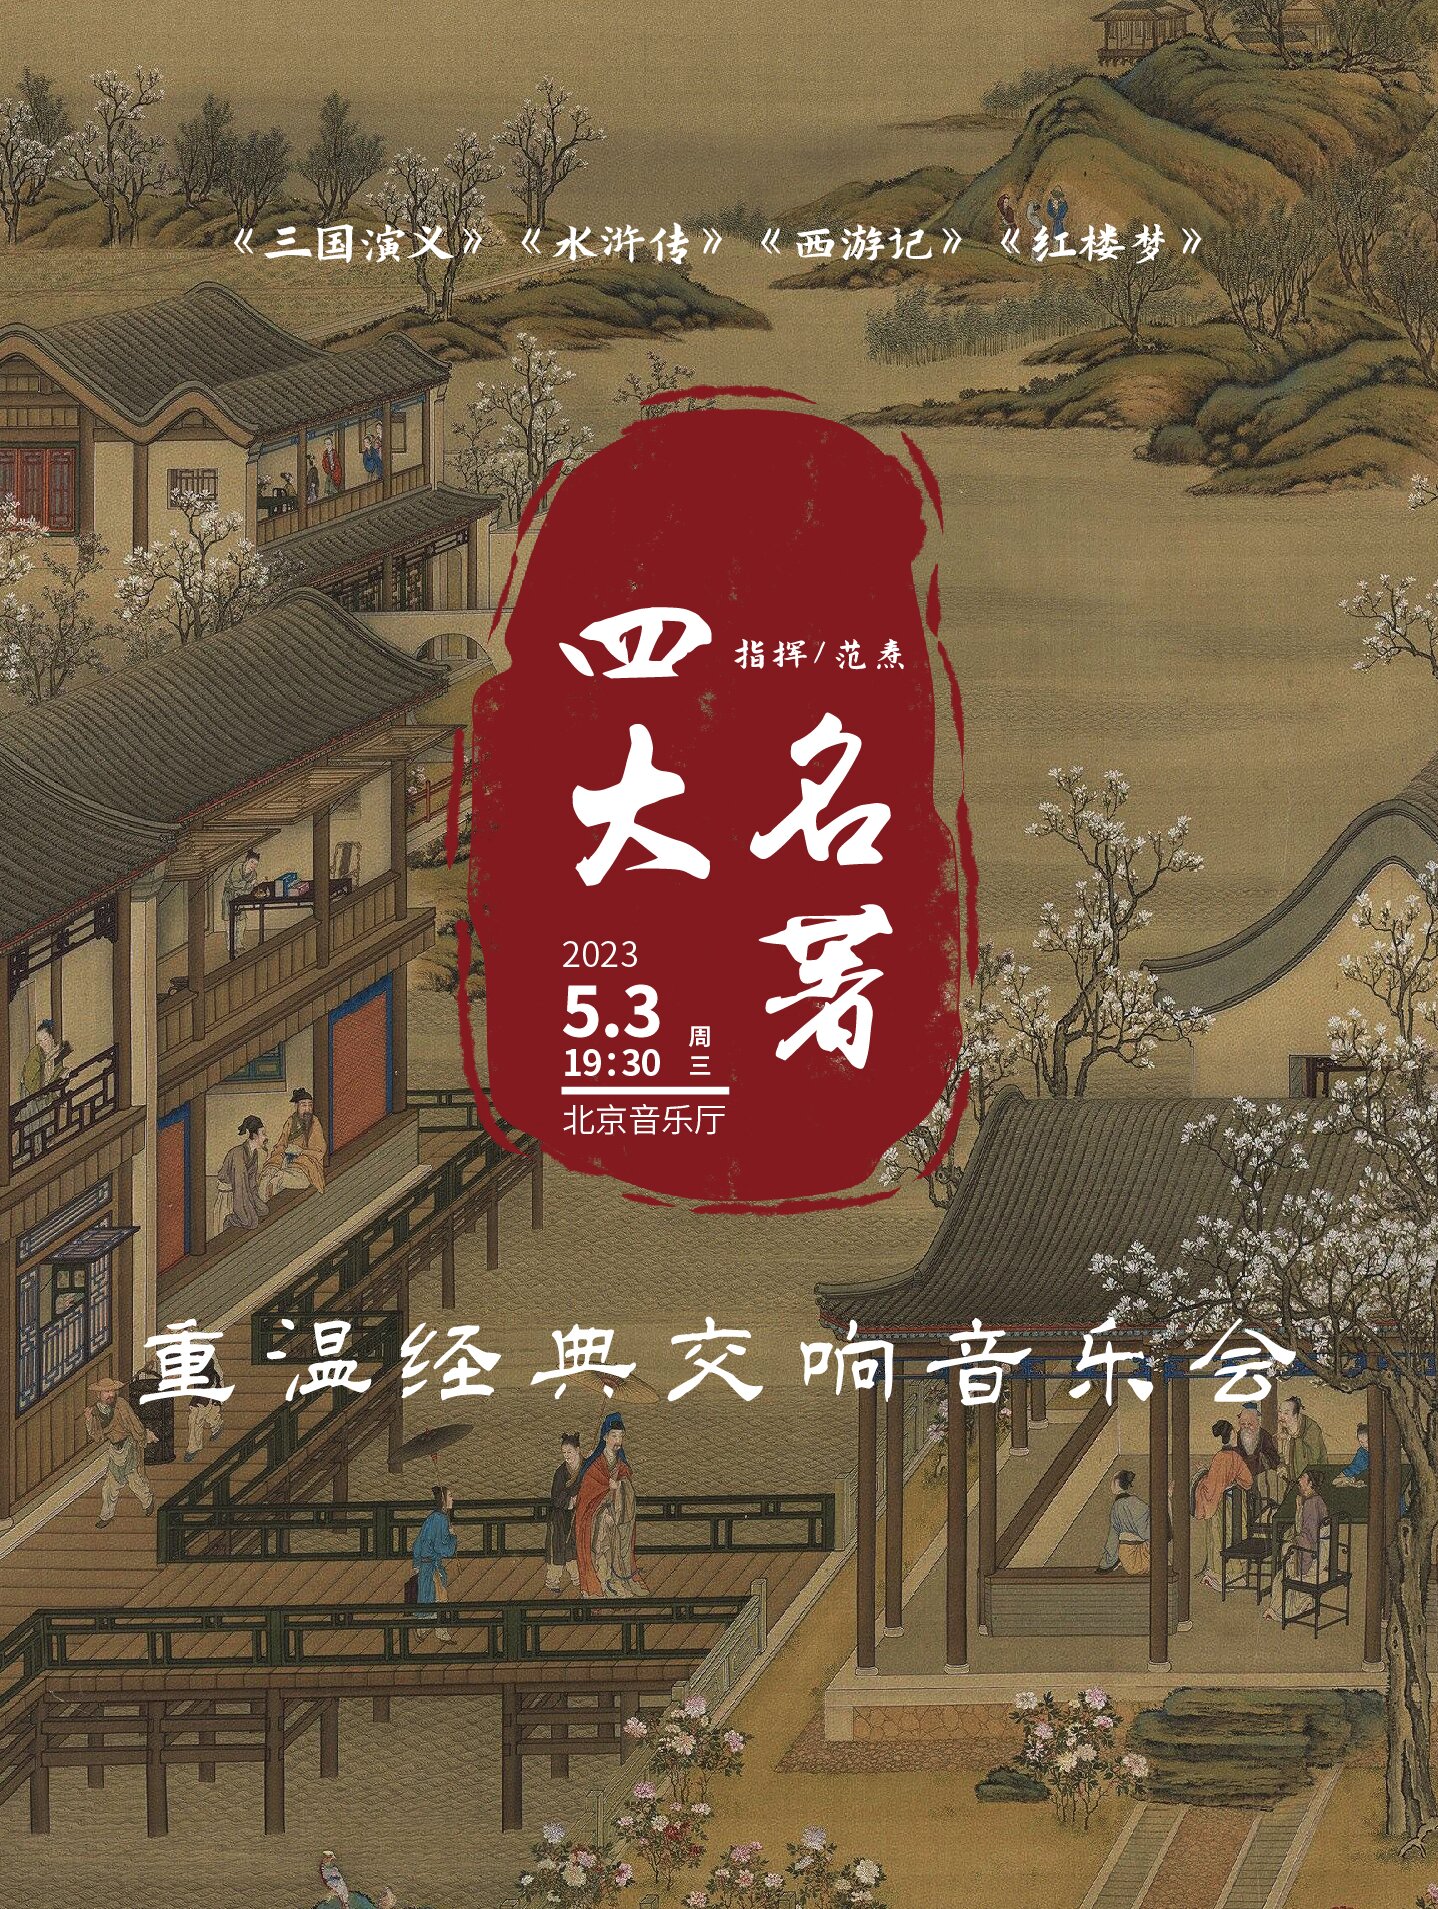 【北京】重温经典《三国演义》《水浒传》《西游记》《红楼梦》“四大名著”交响演唱会